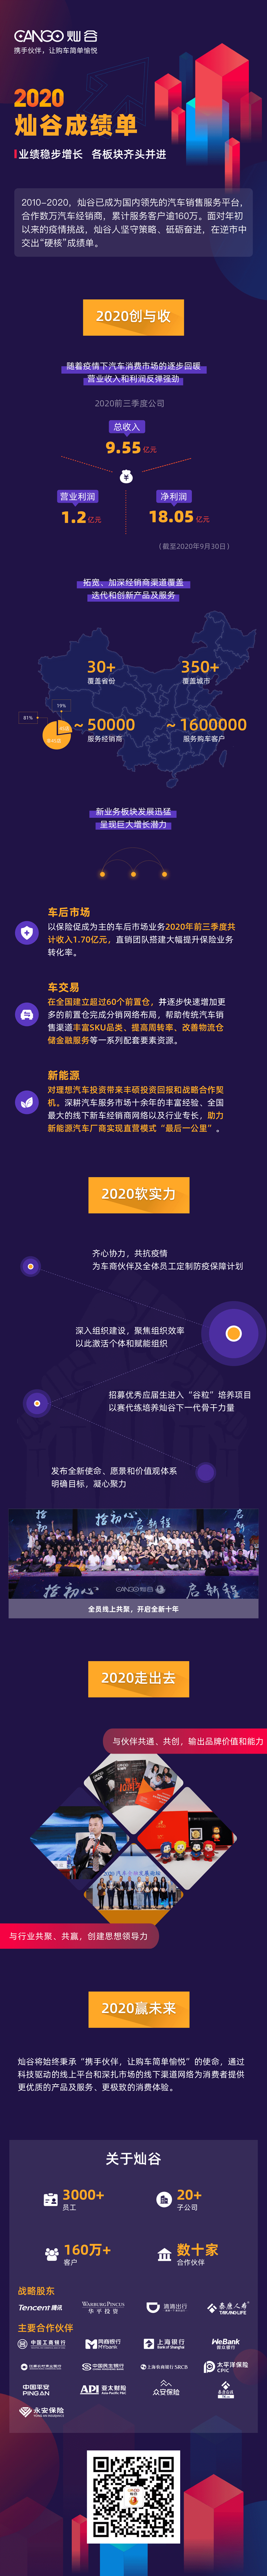 2020年财报-方案2(7)_副本.png